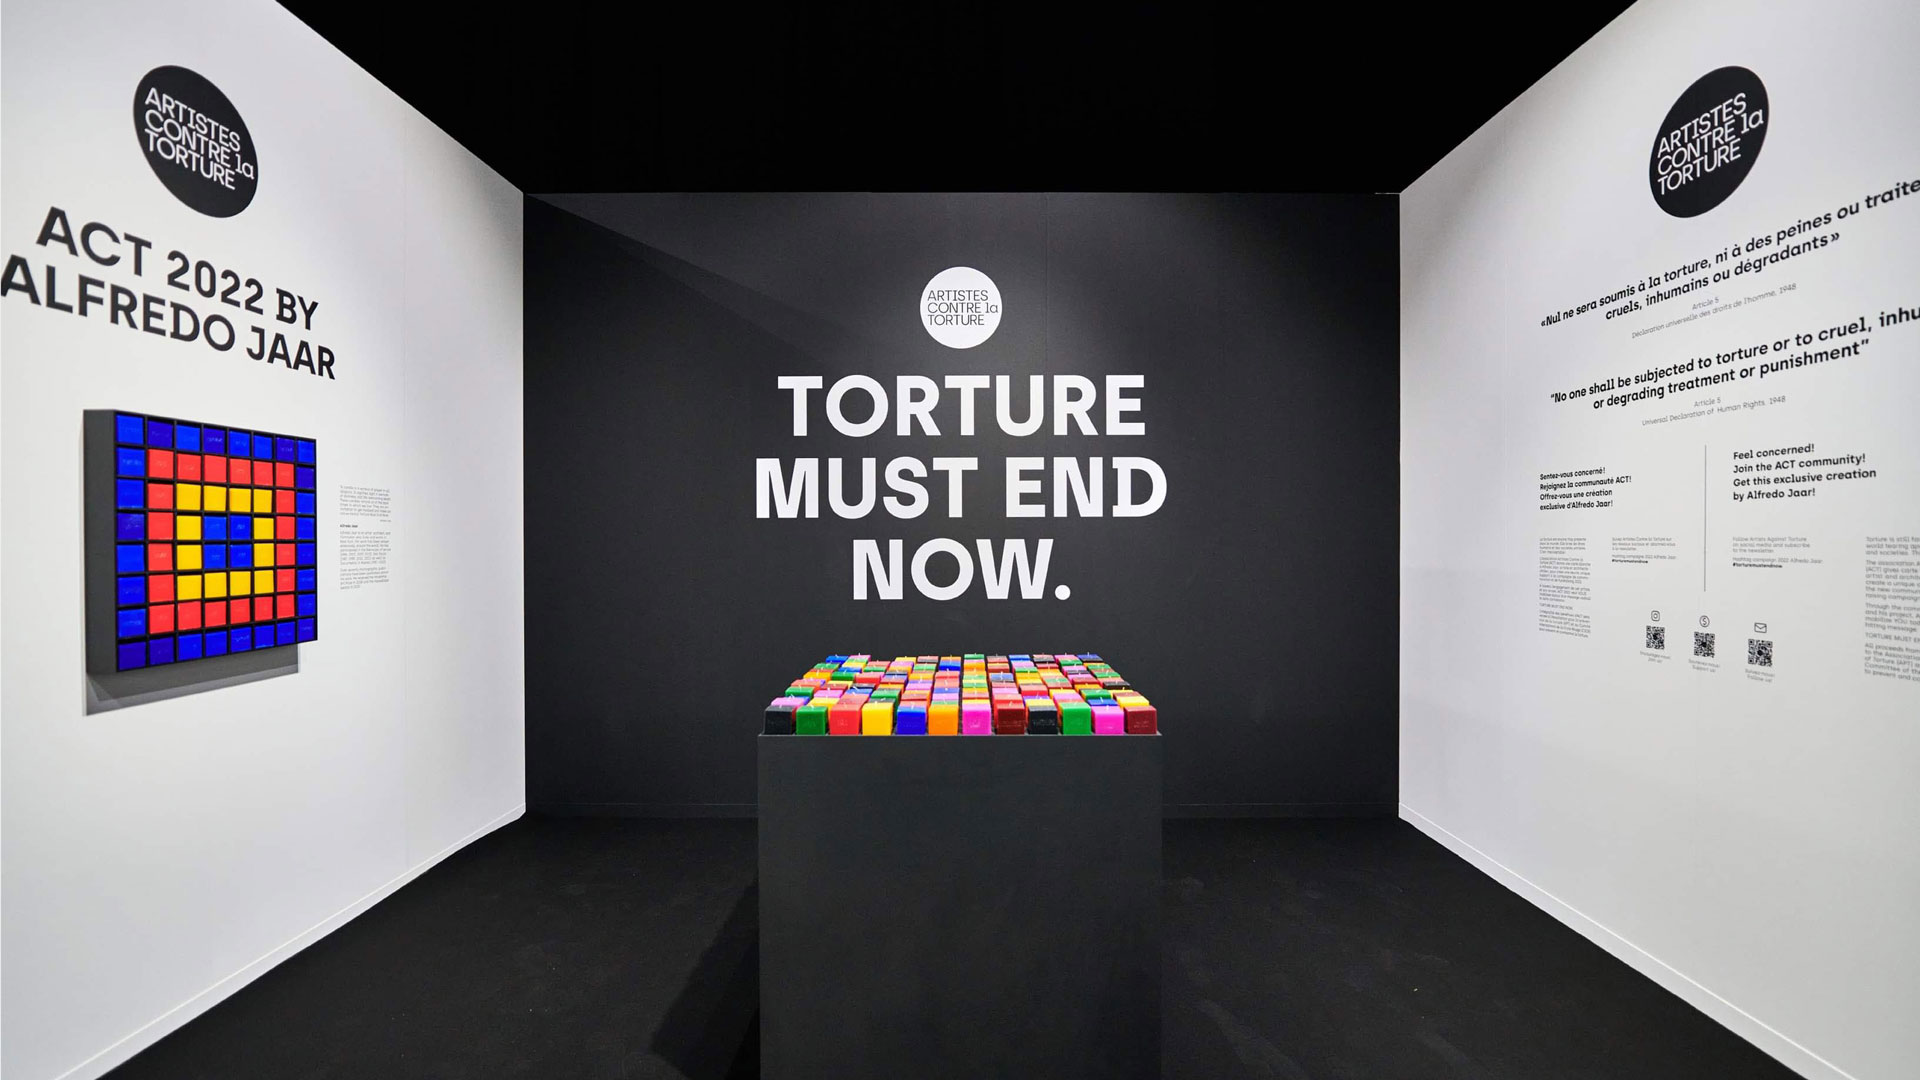 Artistes Contre la Torture